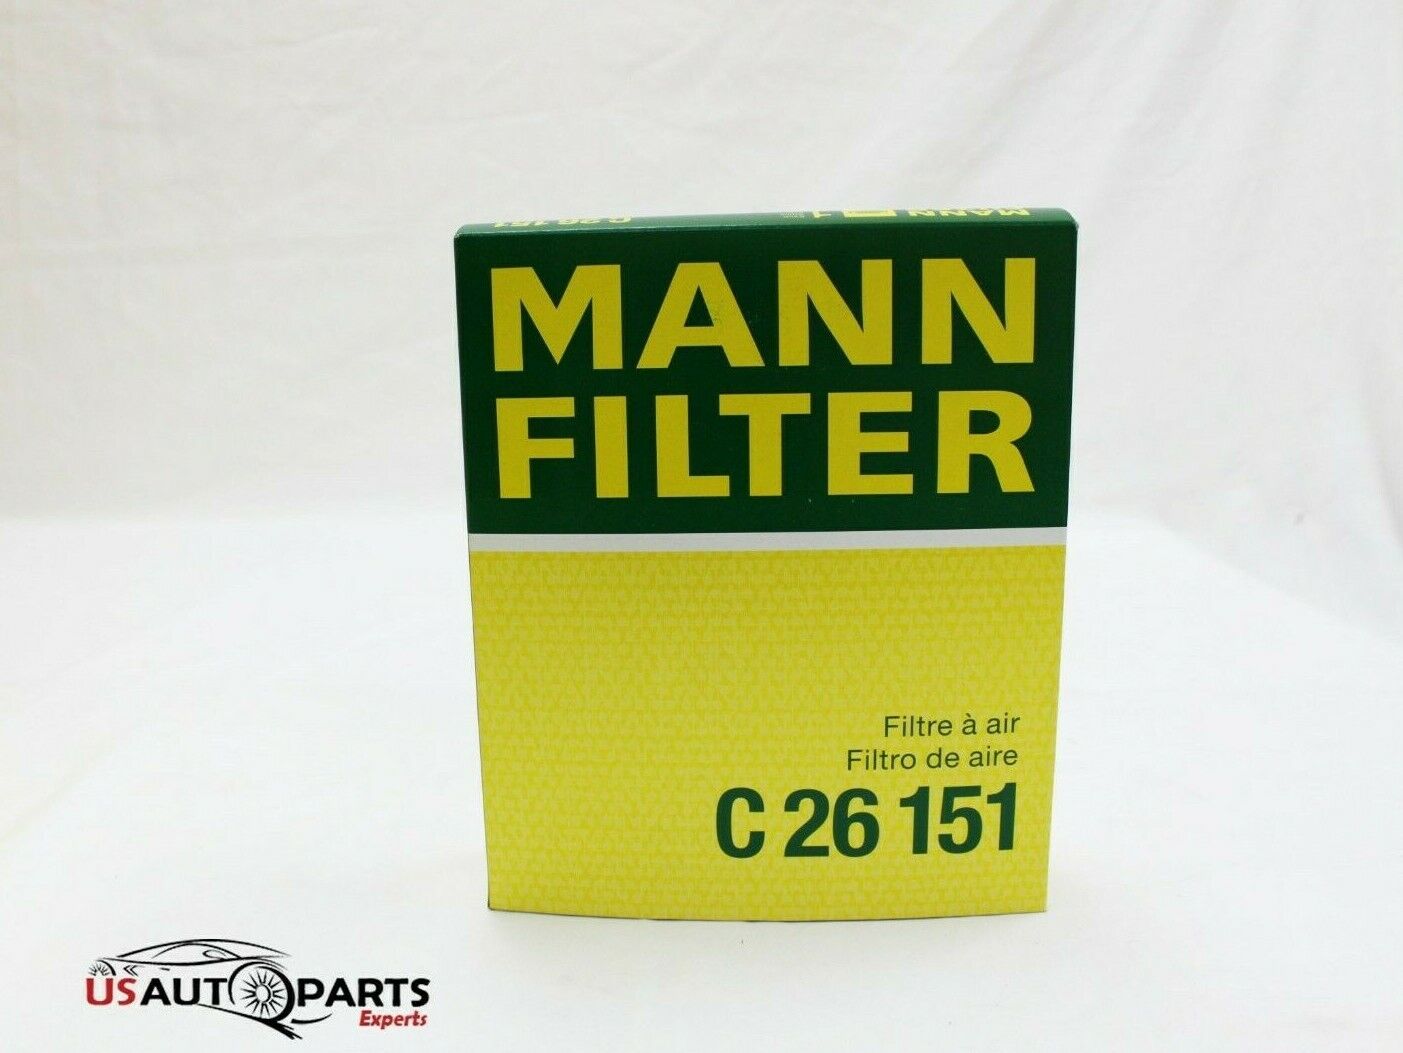 MANN - Air Filter Fits - BMW 530i 540i 740i 740iL 840Ci M5 X5 93-06 13721736675